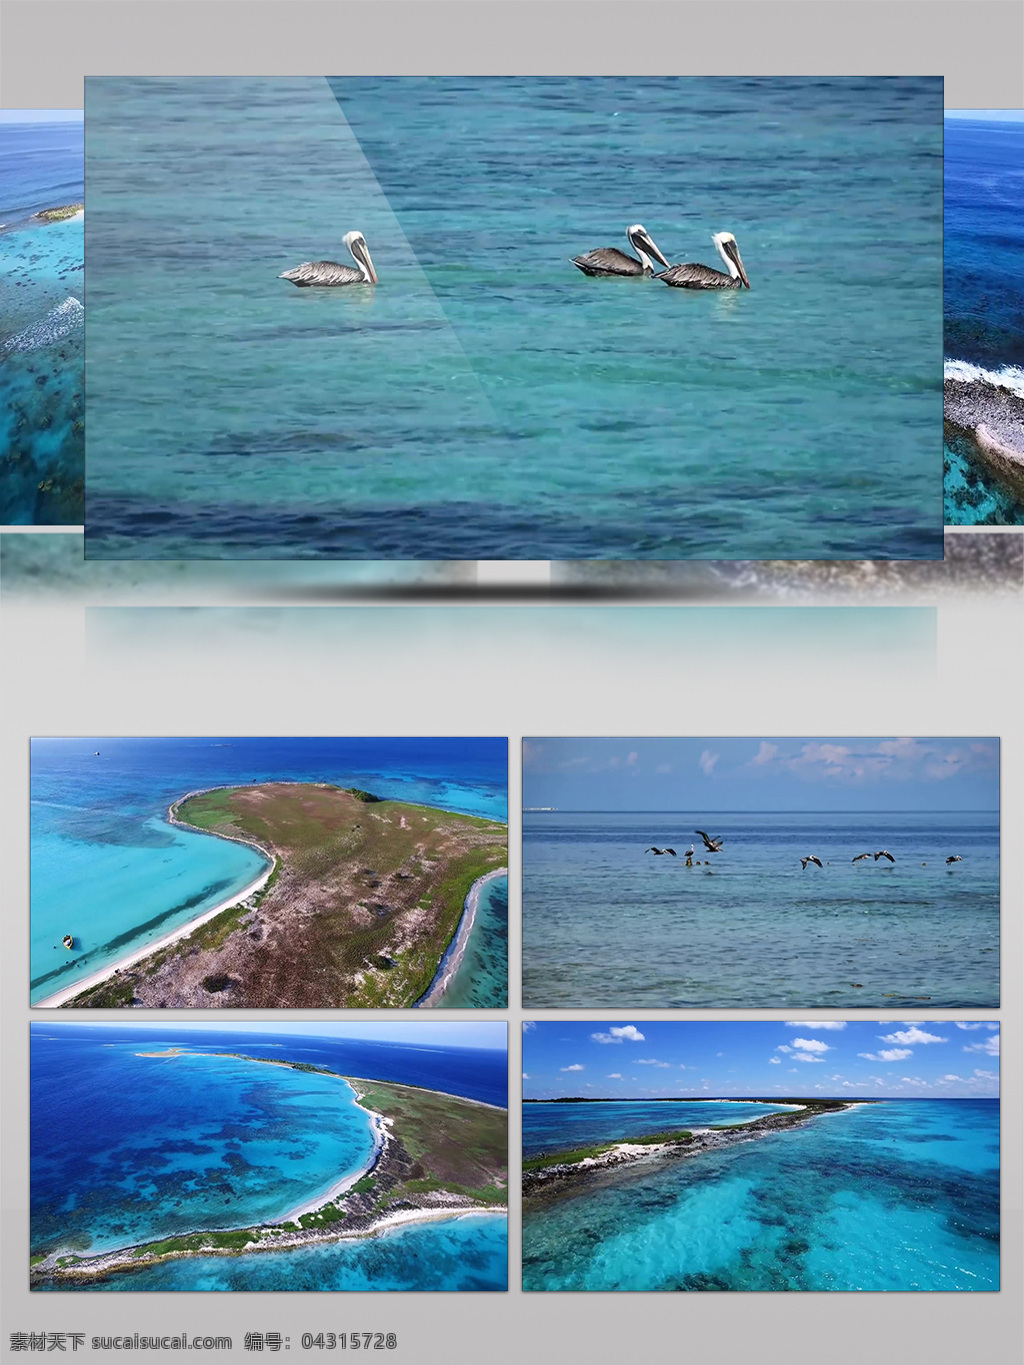 海洋 景观 珊瑚礁 岛屿 航拍 海岛 海鸟 生物 海浪 沙滩 海洋景观 壮观